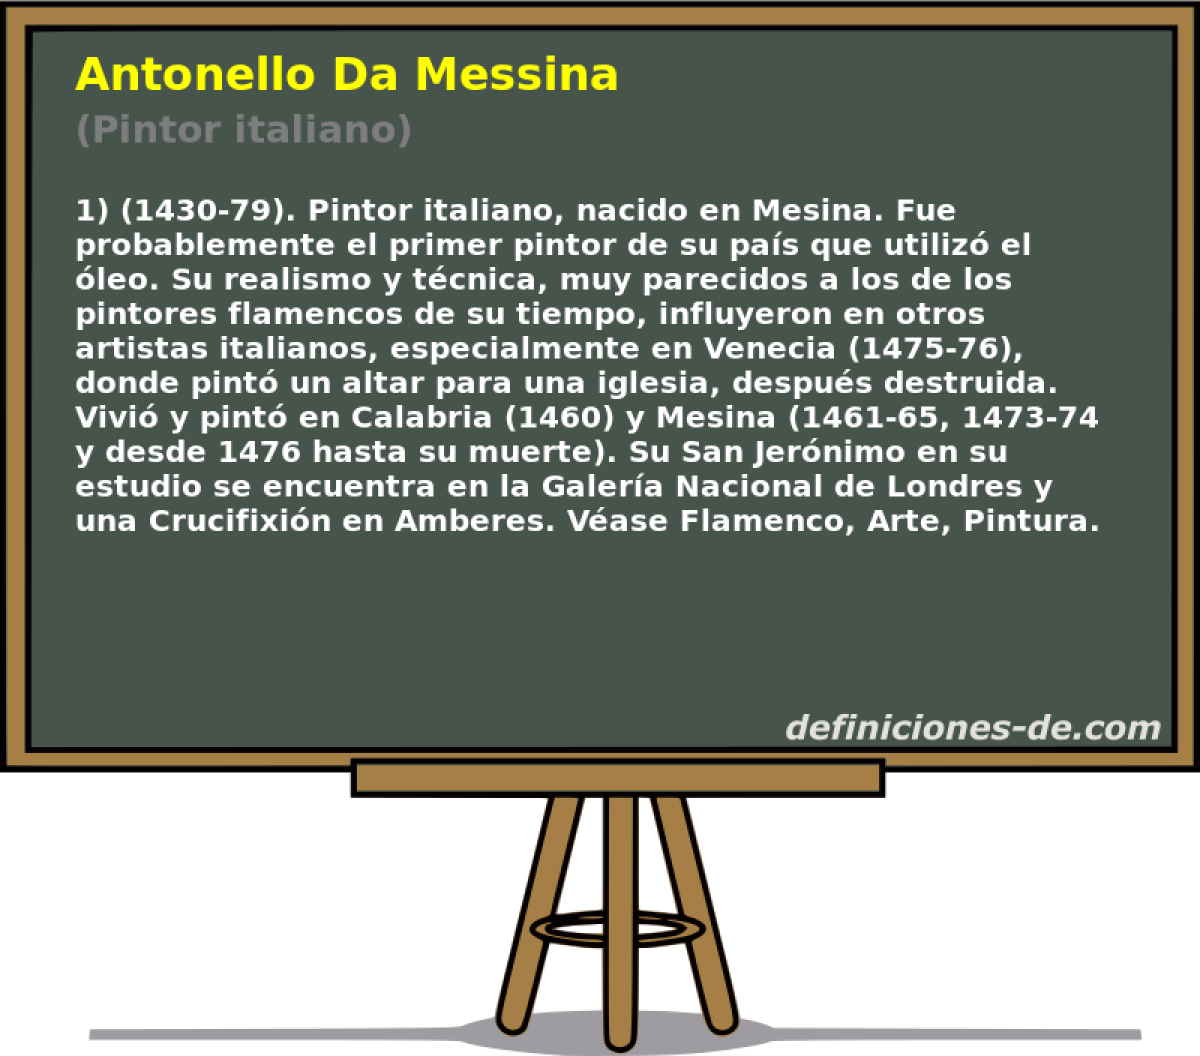 Antonello Da Messina (Pintor italiano)